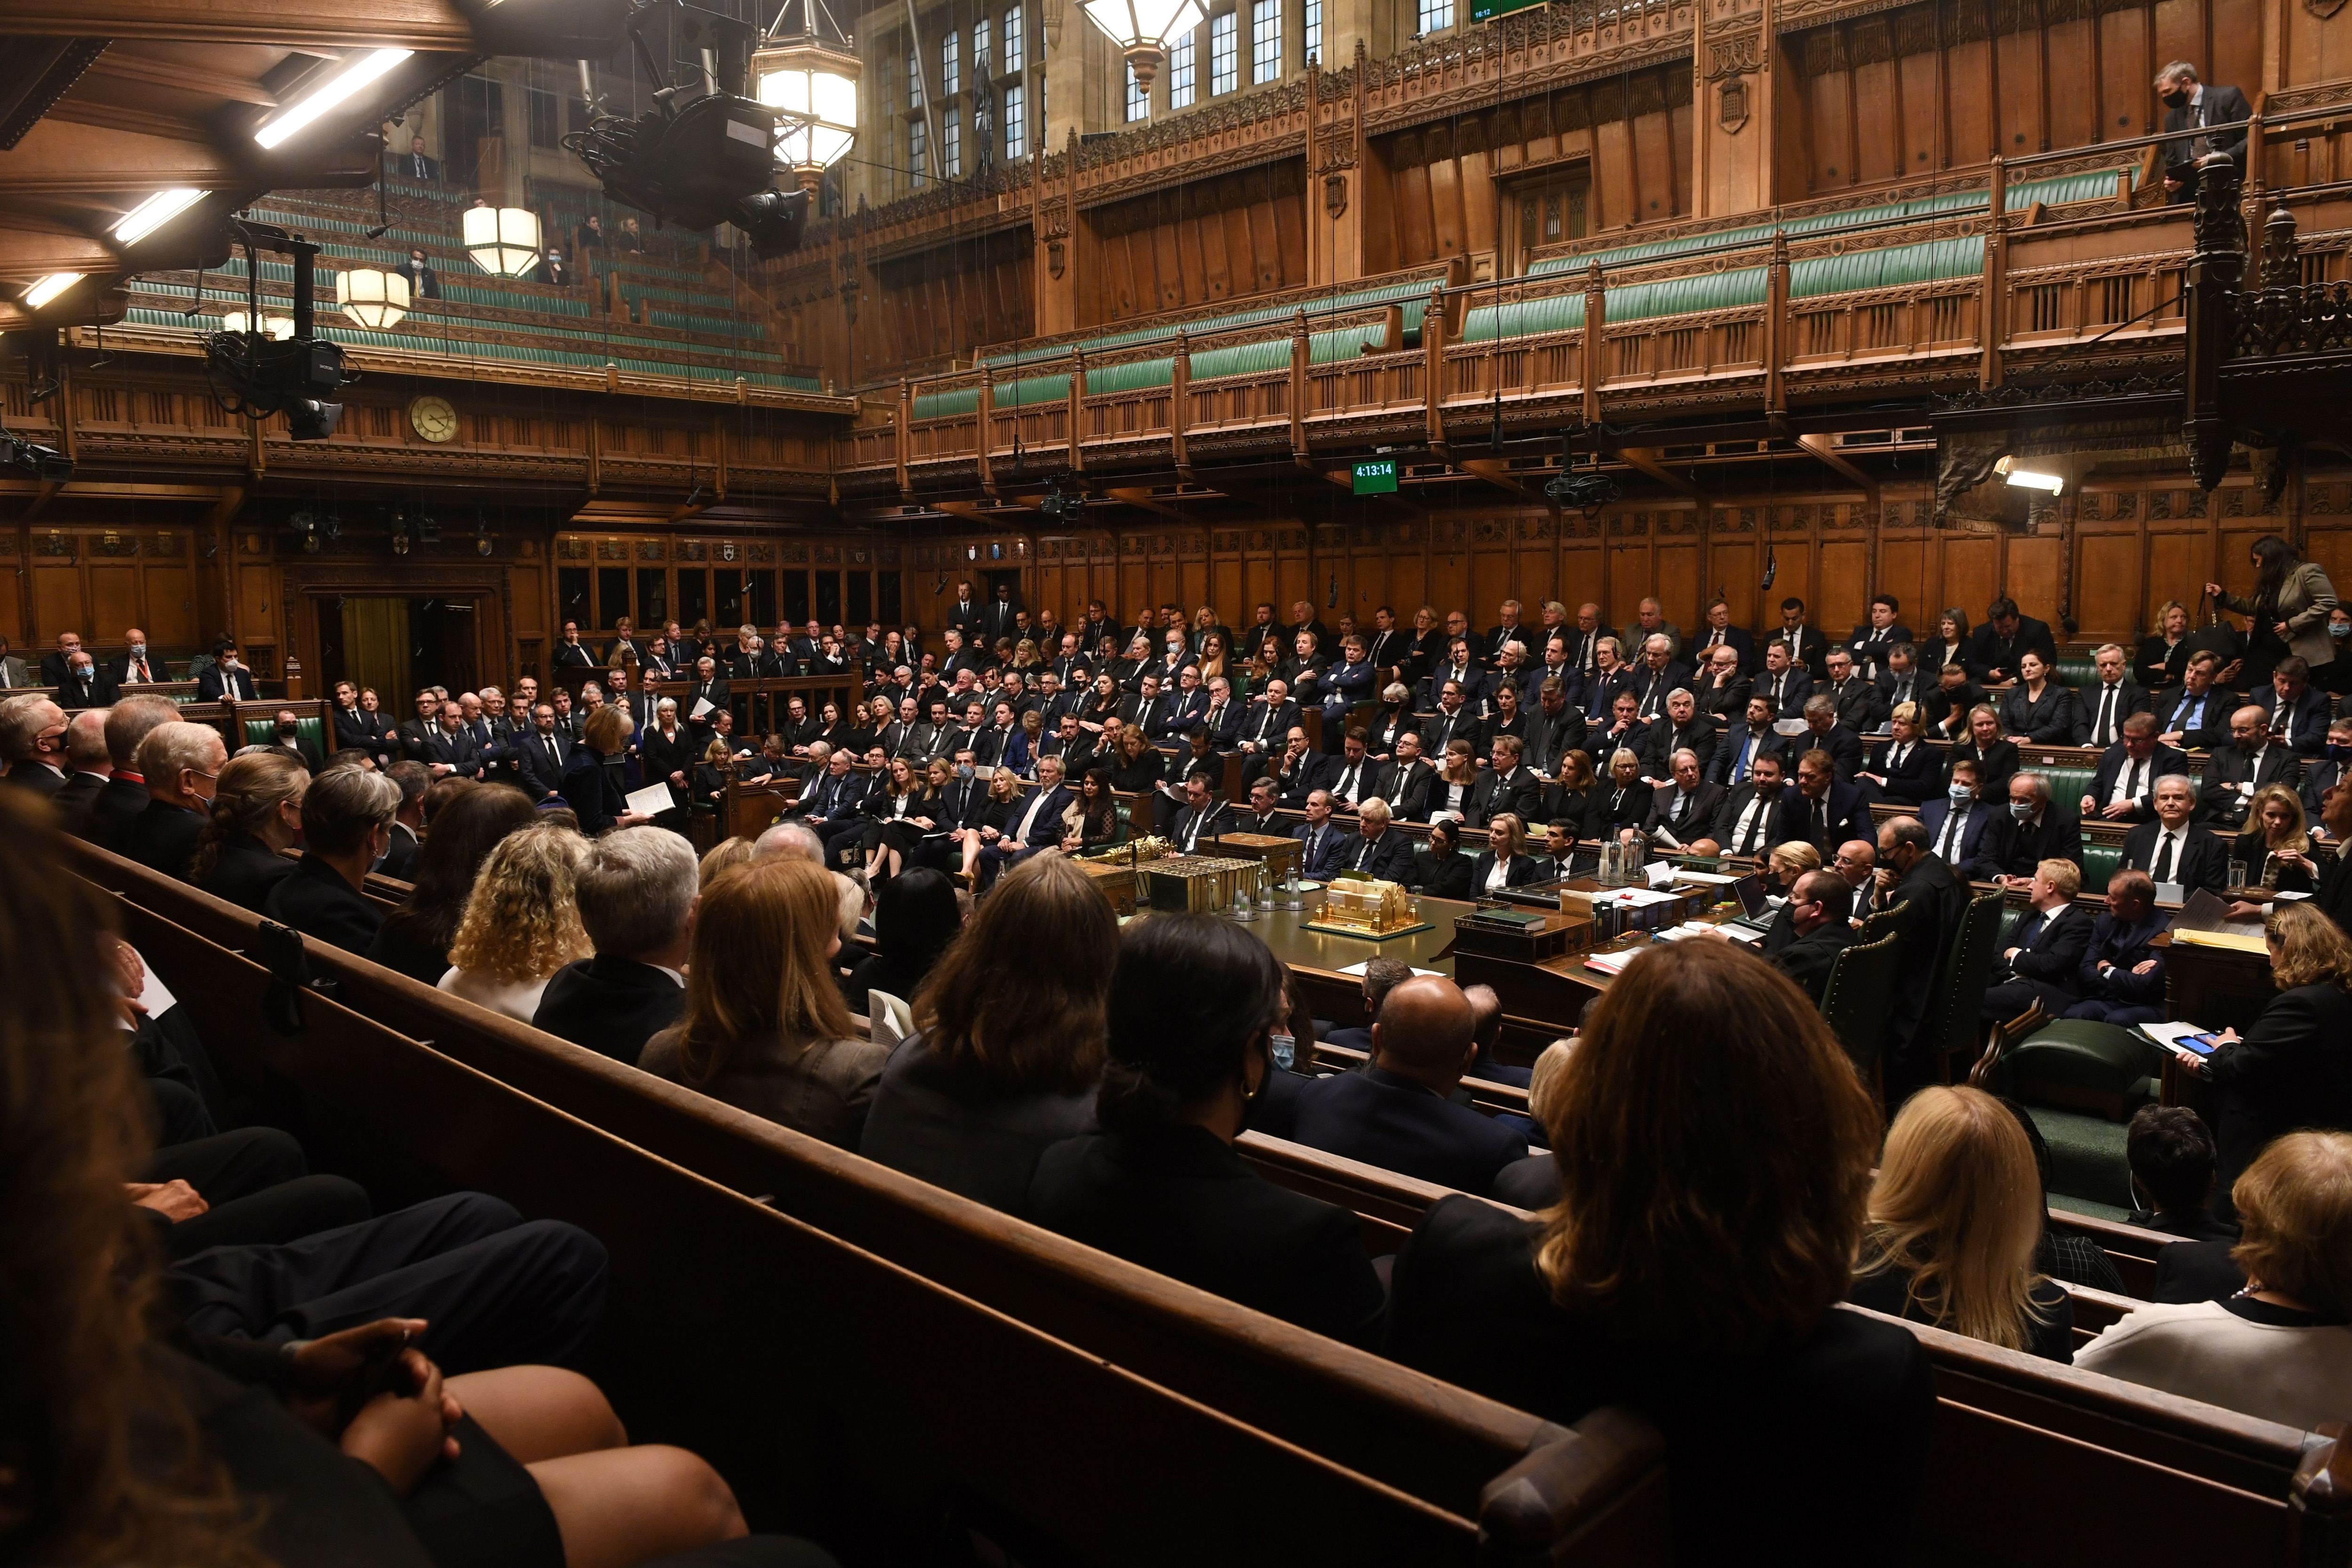 “Los informes sobre el uso indebido de drogas en el Parlamento que se dan en el Sunday Times son profundamente preocupantes" (UK Parliament/Jessica Taylor/Handout via REUTERS)